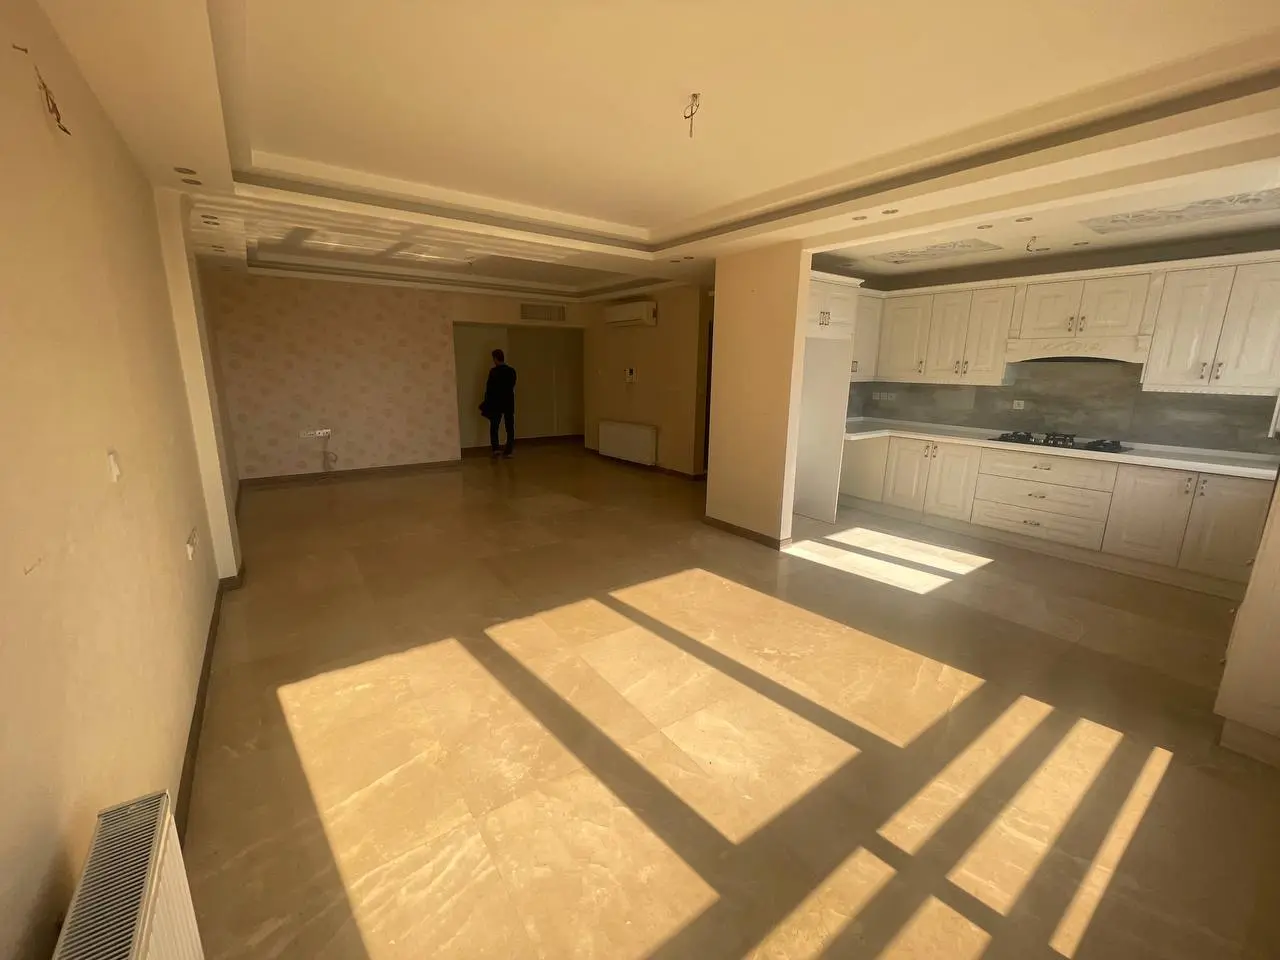  اجاره آپارتمان 100 متری ۵ ساله رهن کامل در سعادت آباد 